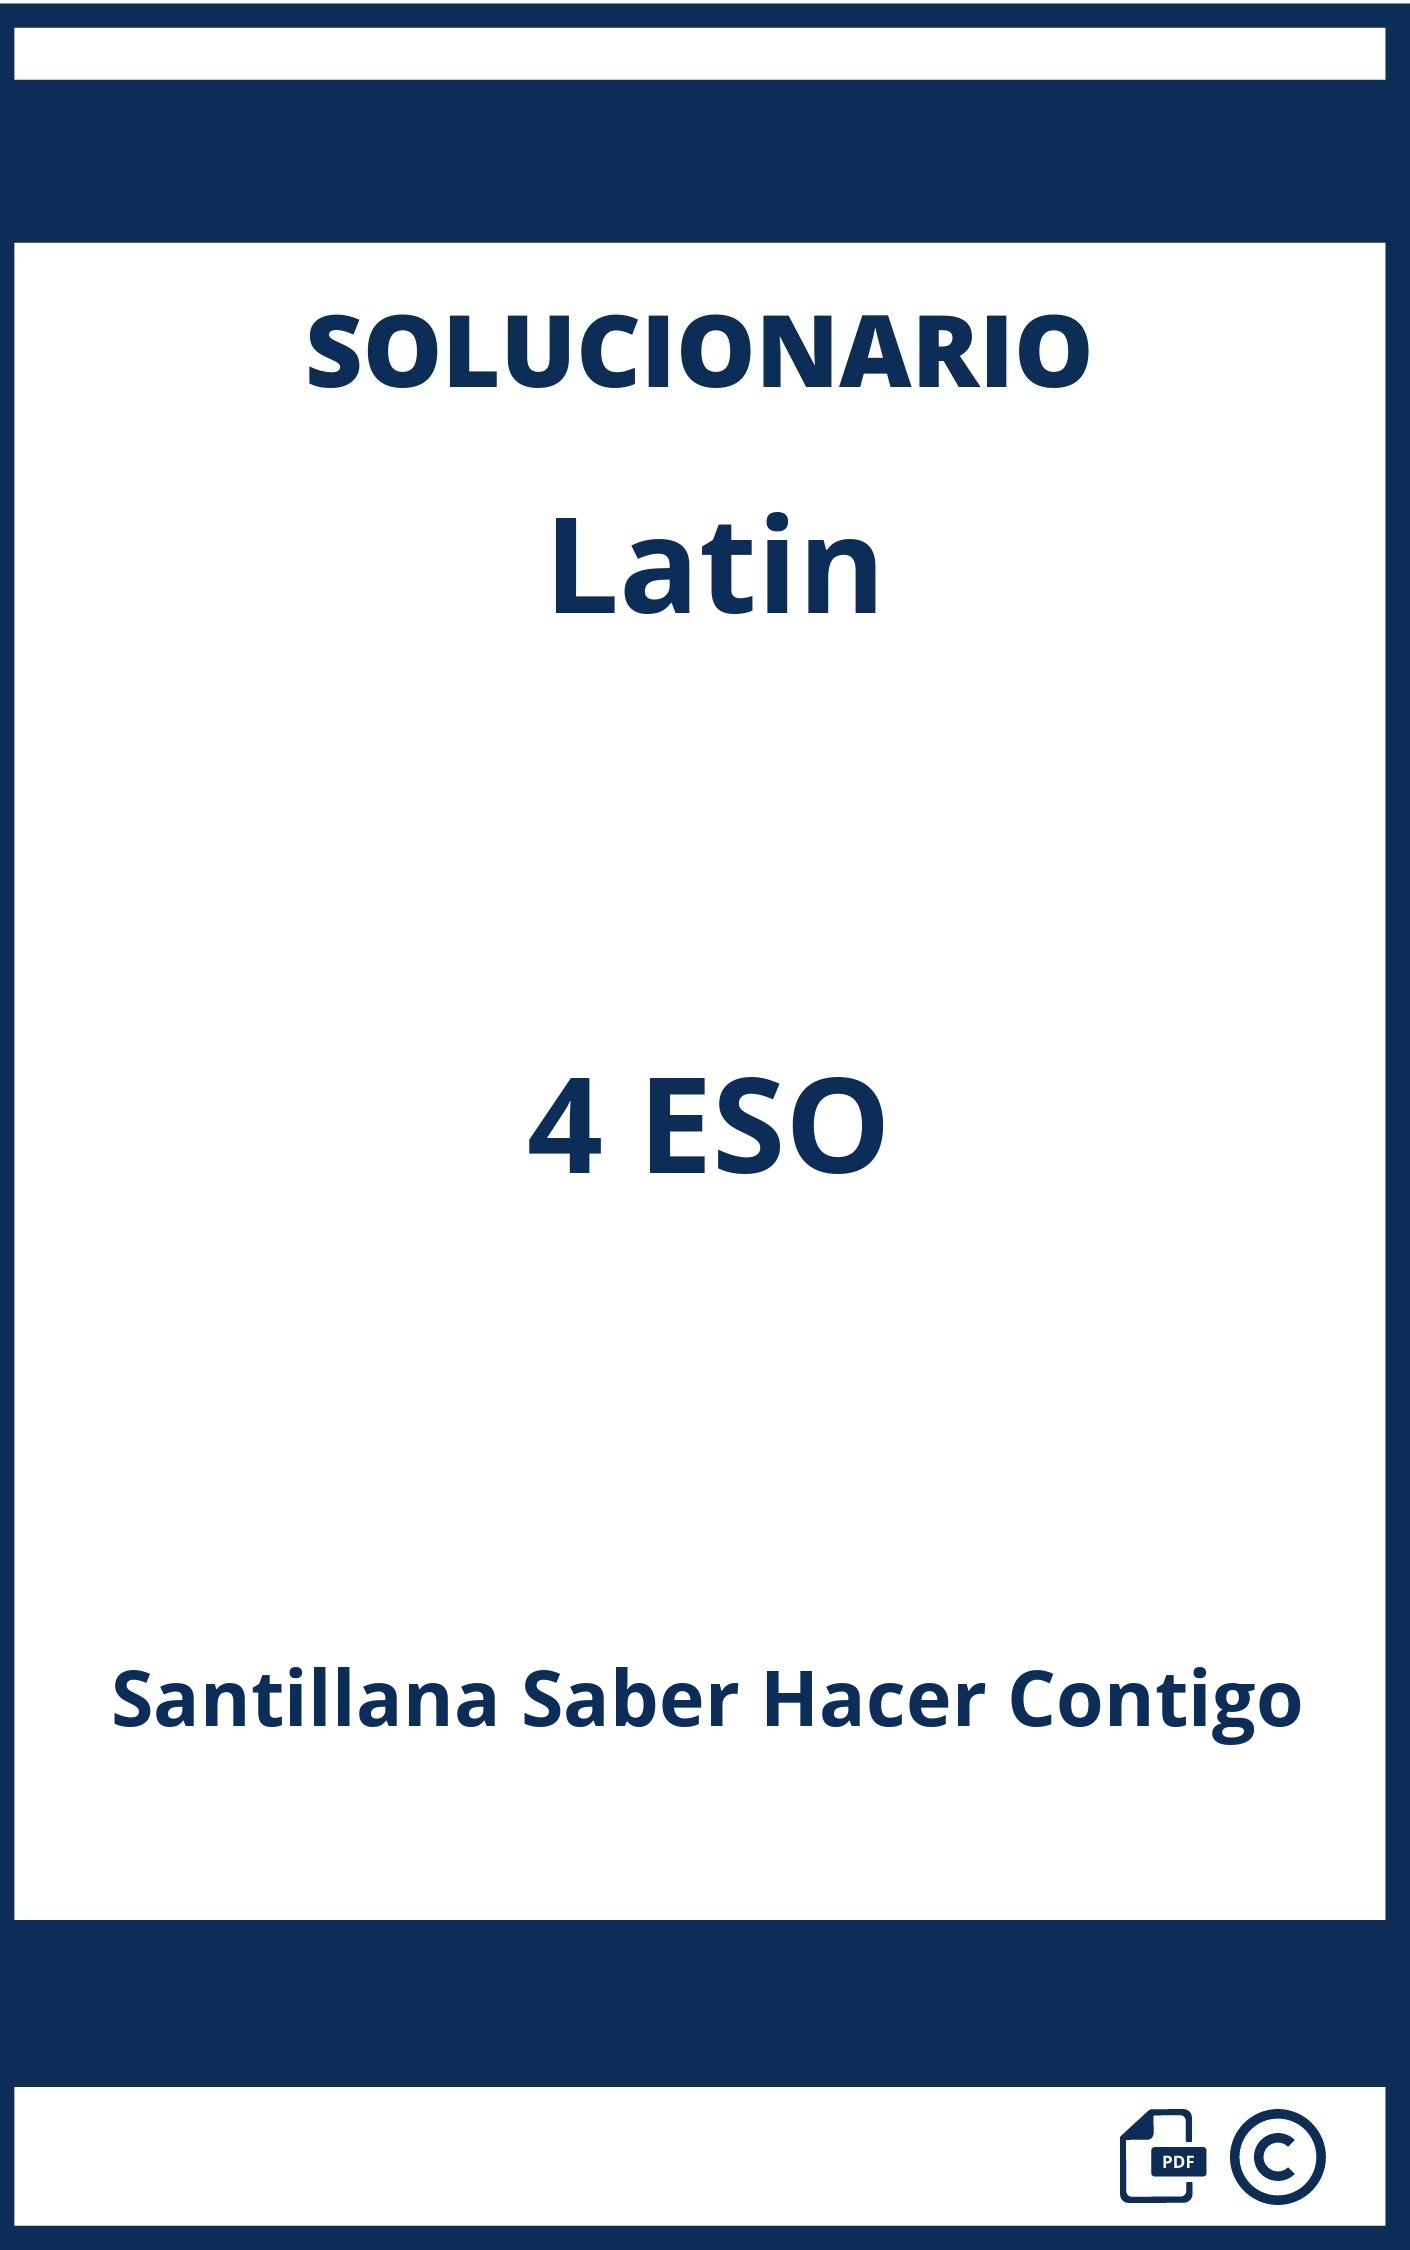 Solucionario Latin 4 ESO Santillana Saber Hacer Contigo